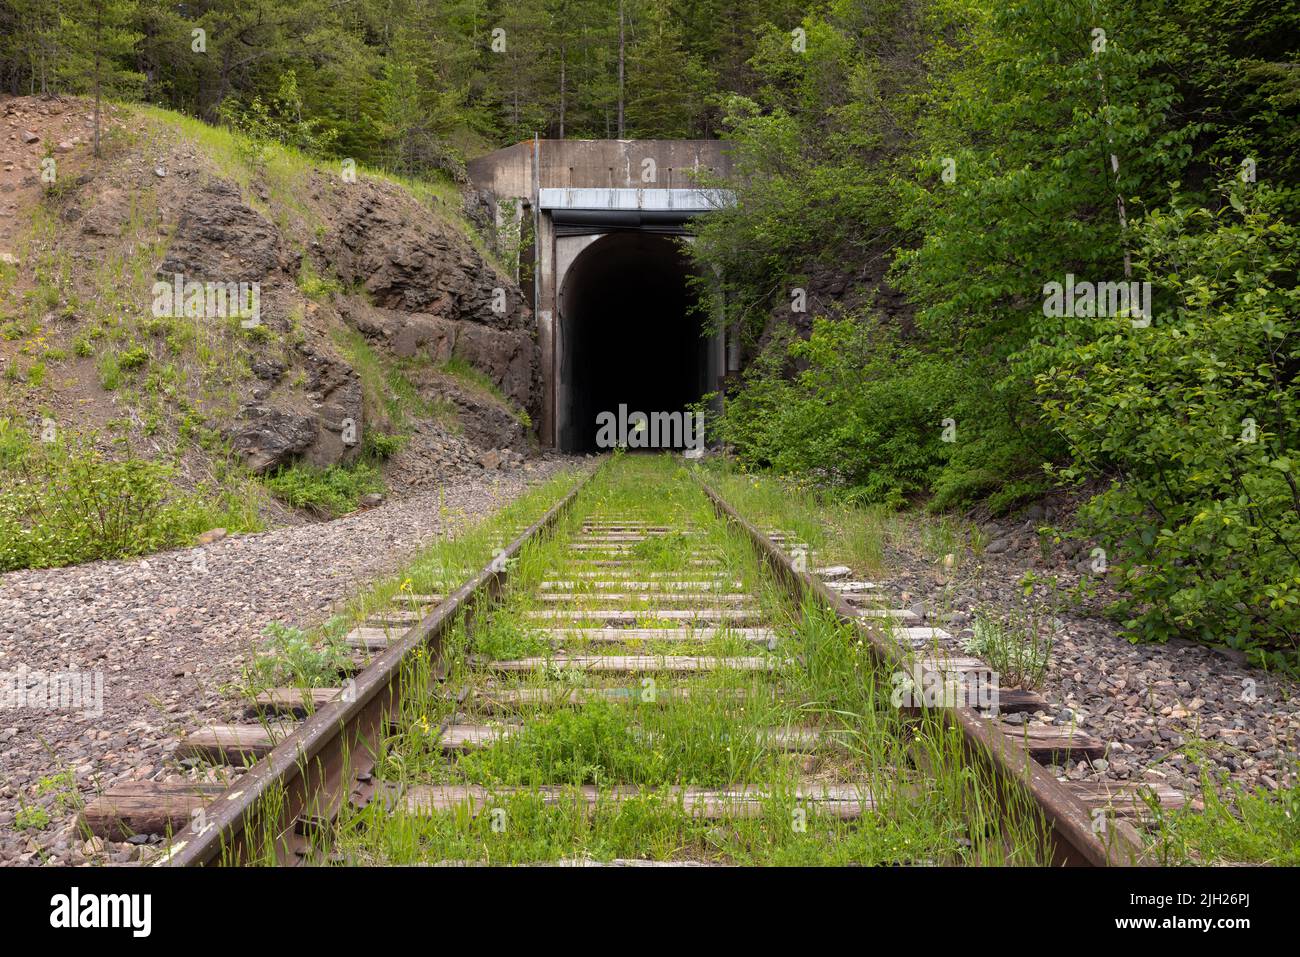 Túnel de ferrocarril abandonado en el bosque Foto de stock